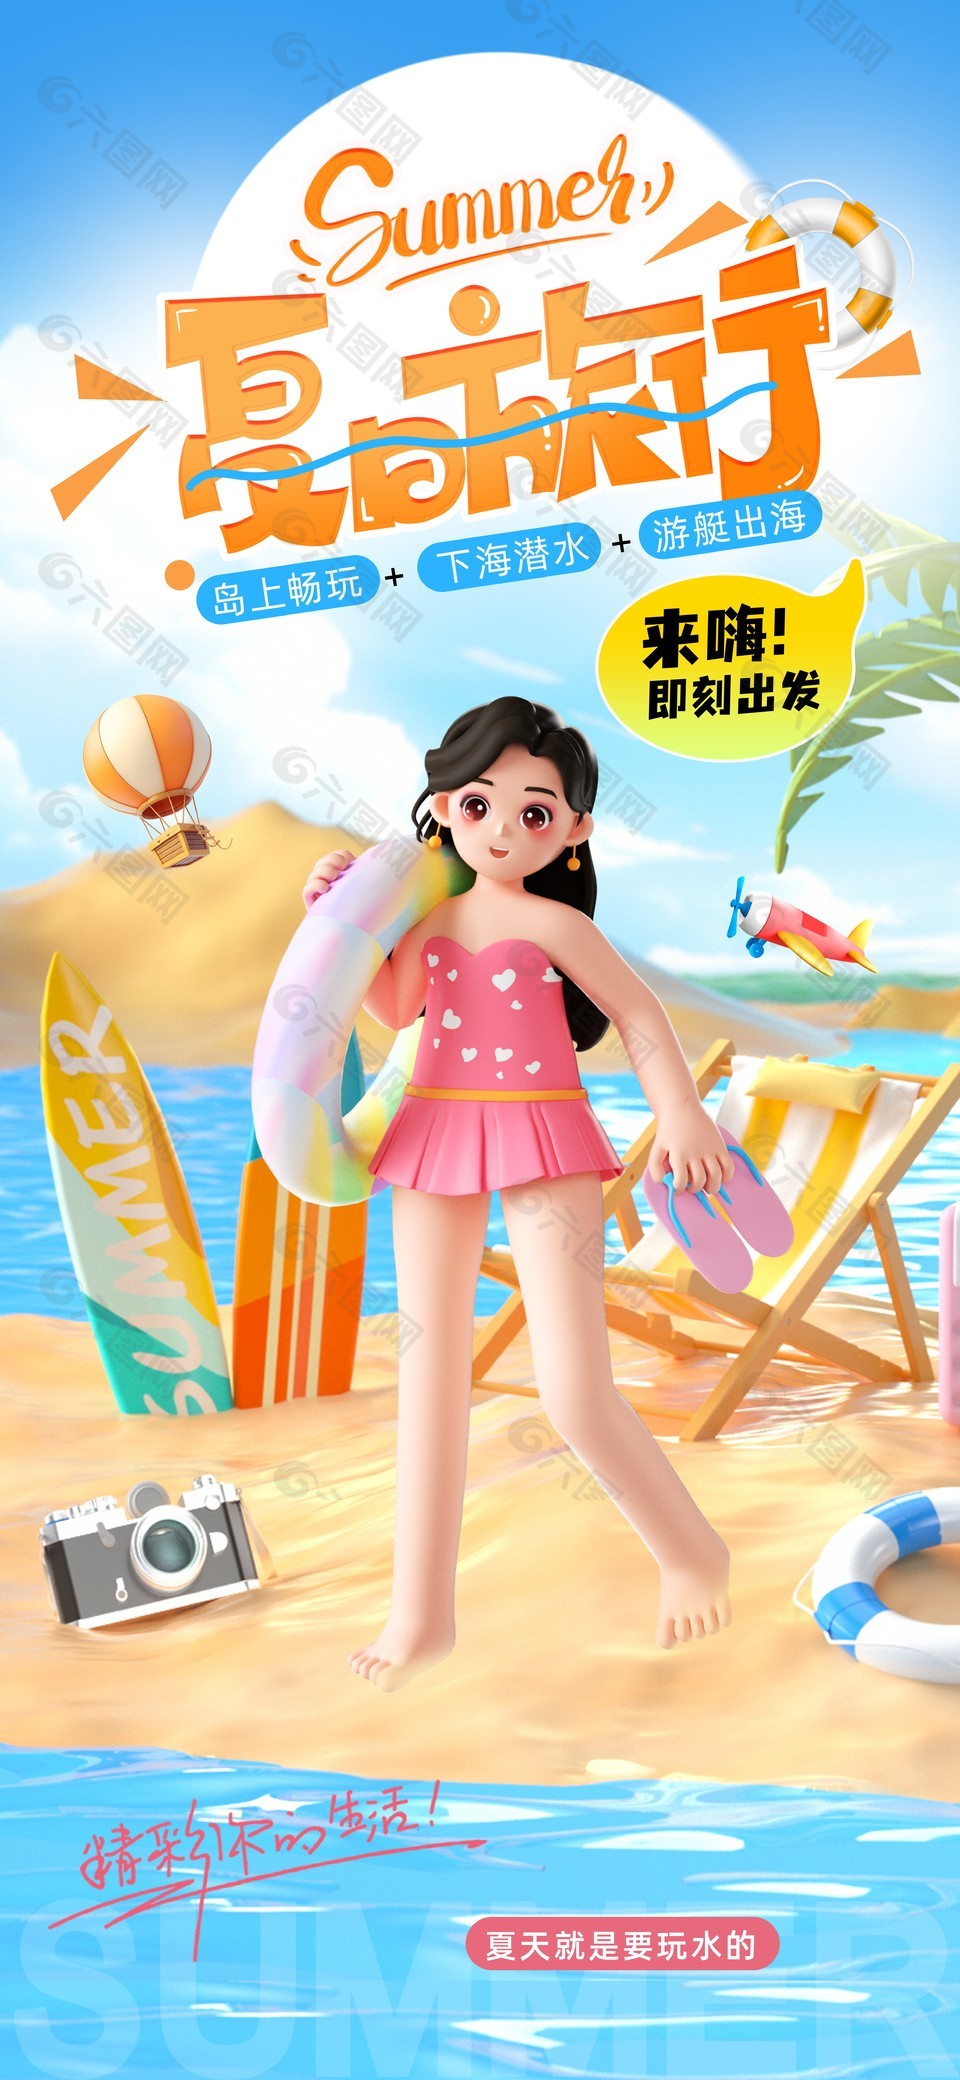 精彩你的生活夏日沙滩主题游玩海报